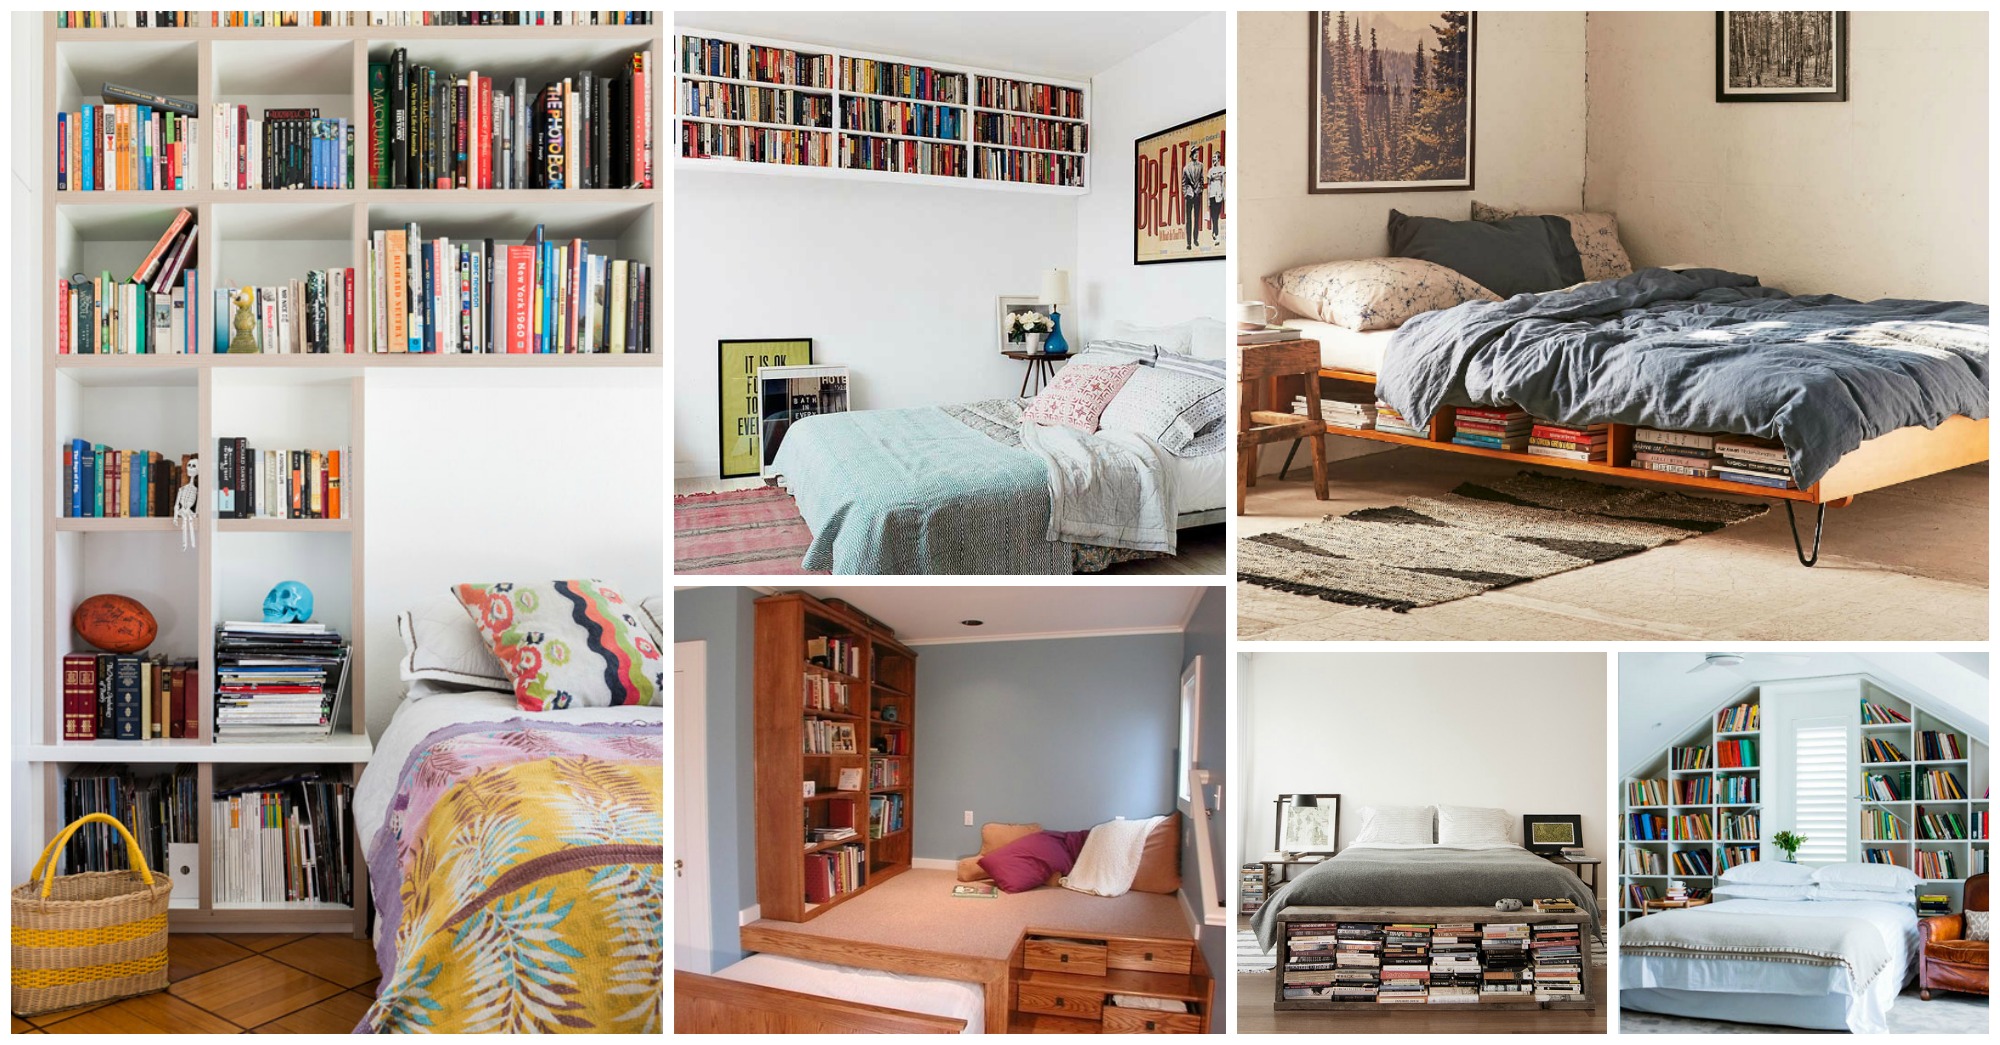 Bedroom Bookshelf Ideas